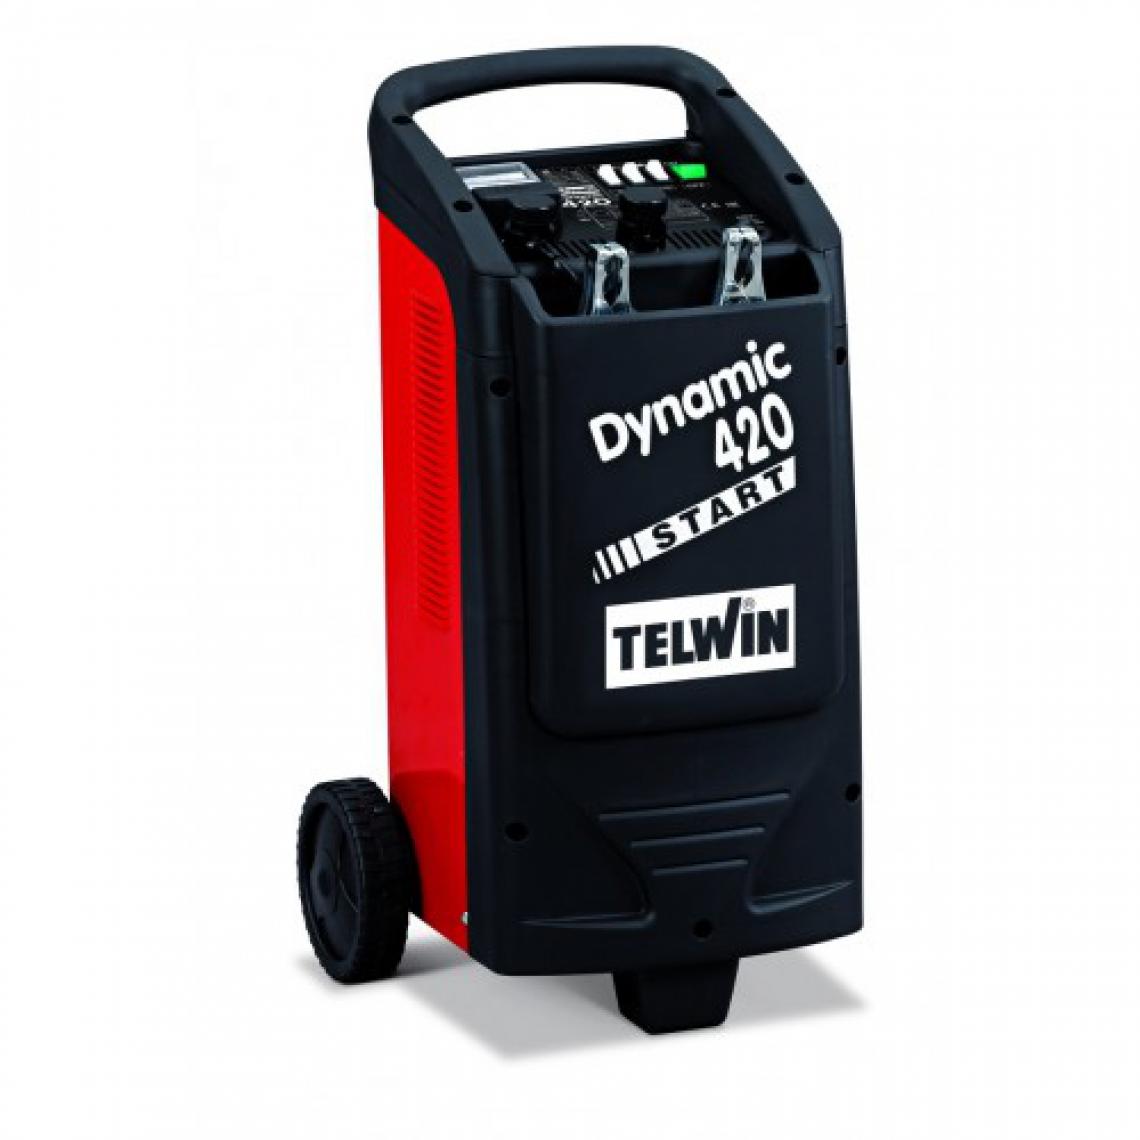 Telwin - TELWIN Chargeur et démarreur de batterie tous véhicules 12/24V Dynamic 420 Start - Chargeur Voiture 12V